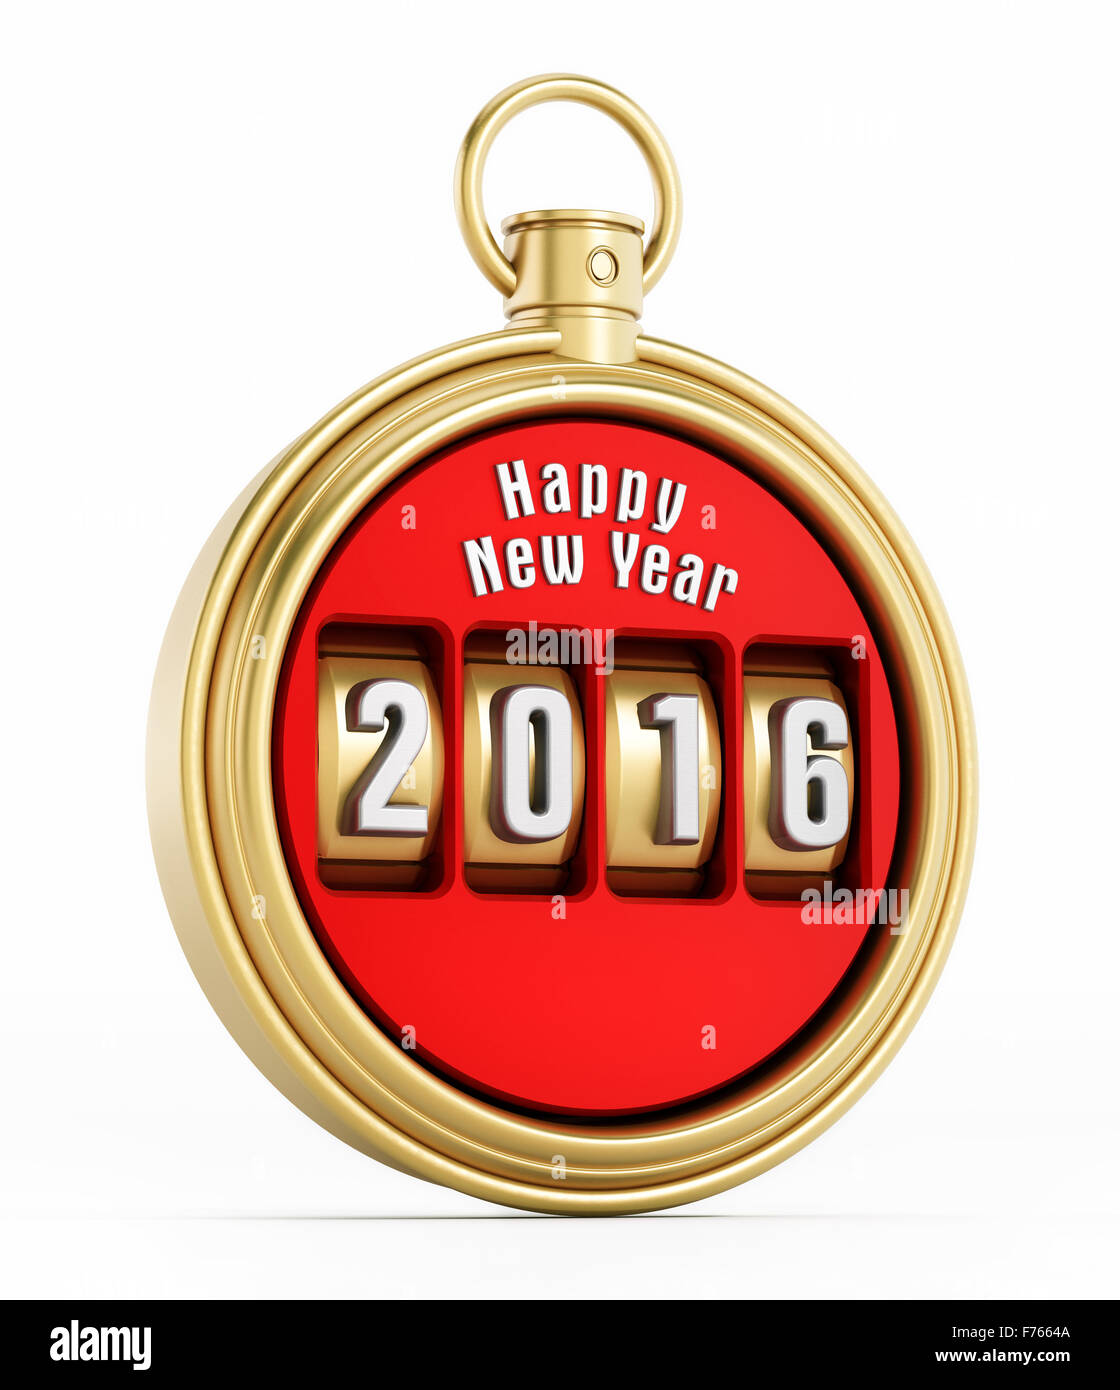 Neues Jahr 2016 Chronometer isoliert auf weißem Hintergrund Stockfoto